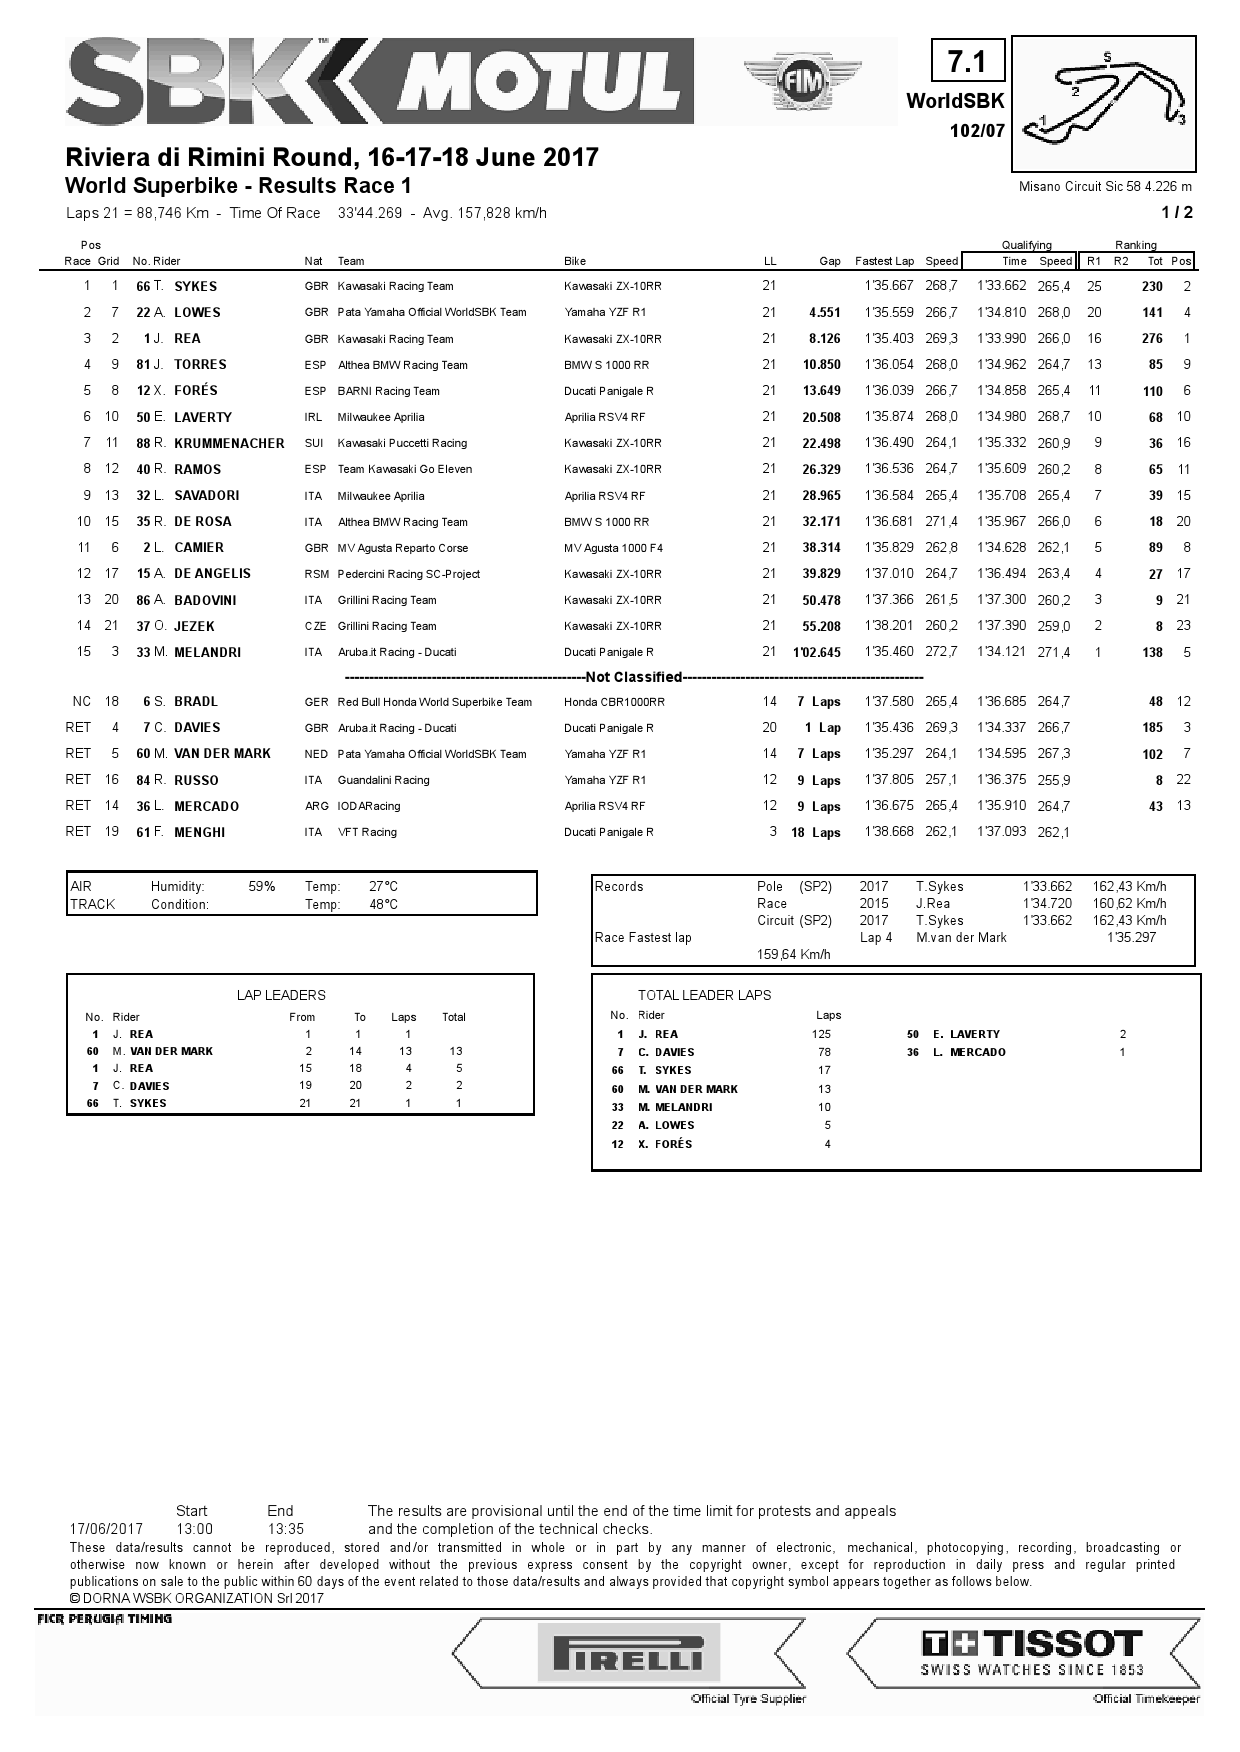 Результаты 1-й гонки World Superbike в Мизано, 17.06.2017